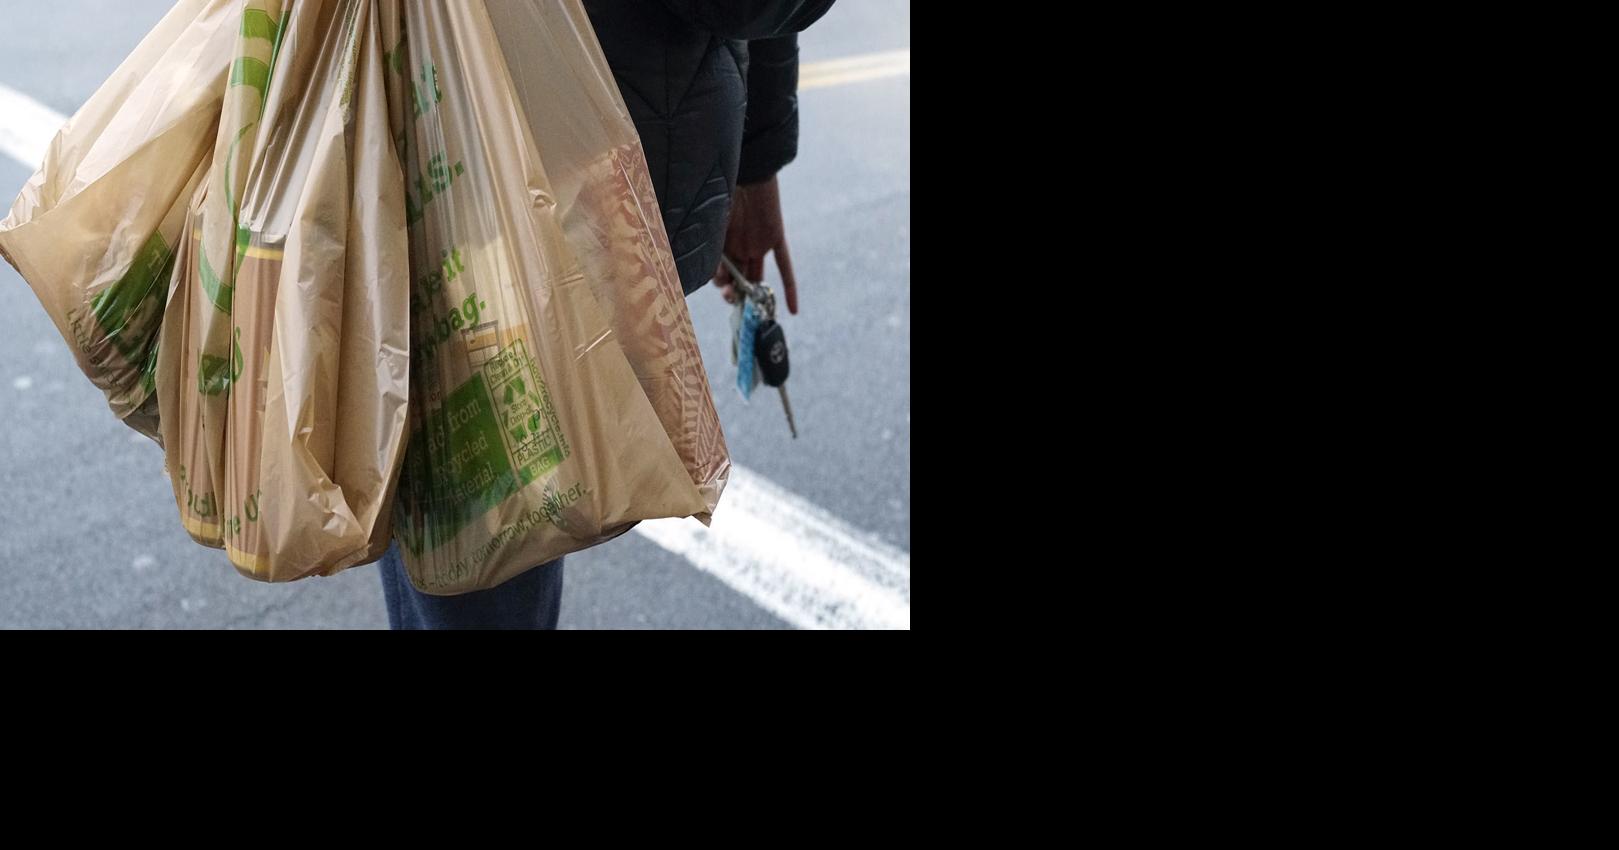 State's looming plastic bag ban takes a step backward, environmentalists say